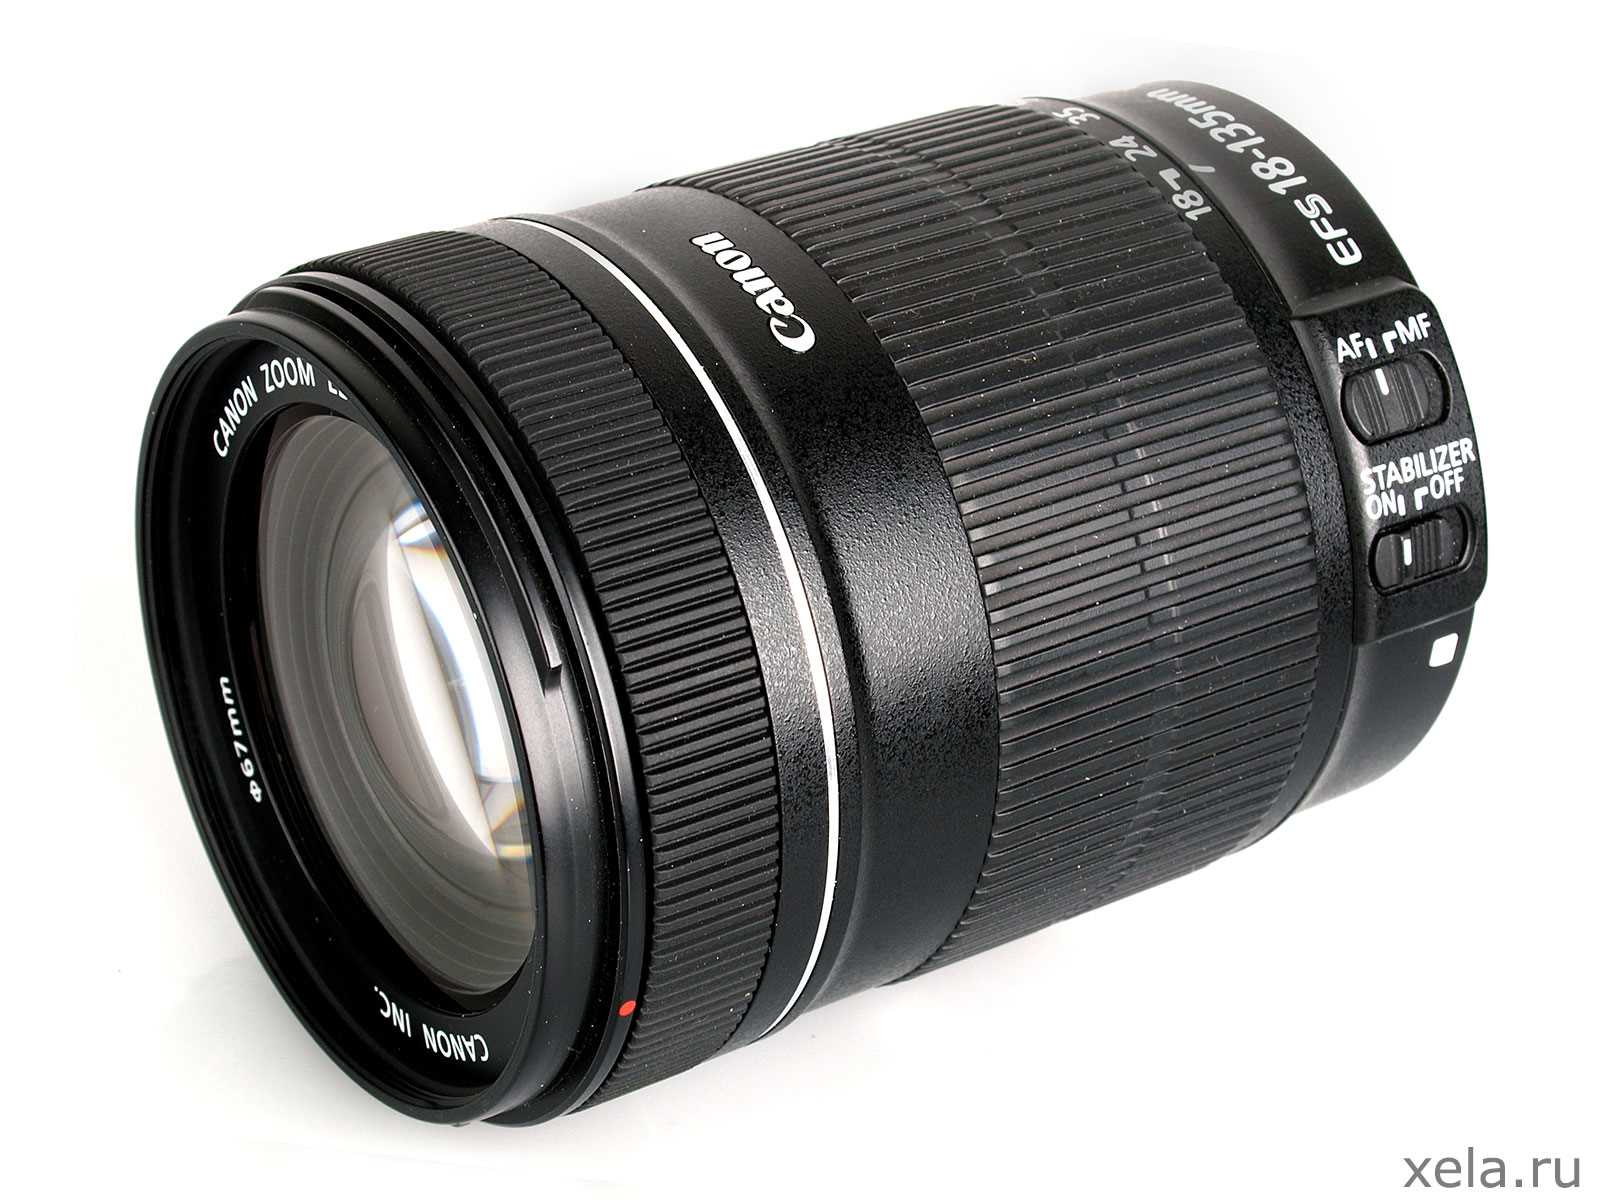 Canon 18-135mm f / 3.5-5.6 IS Lens - օբյեկտիվ